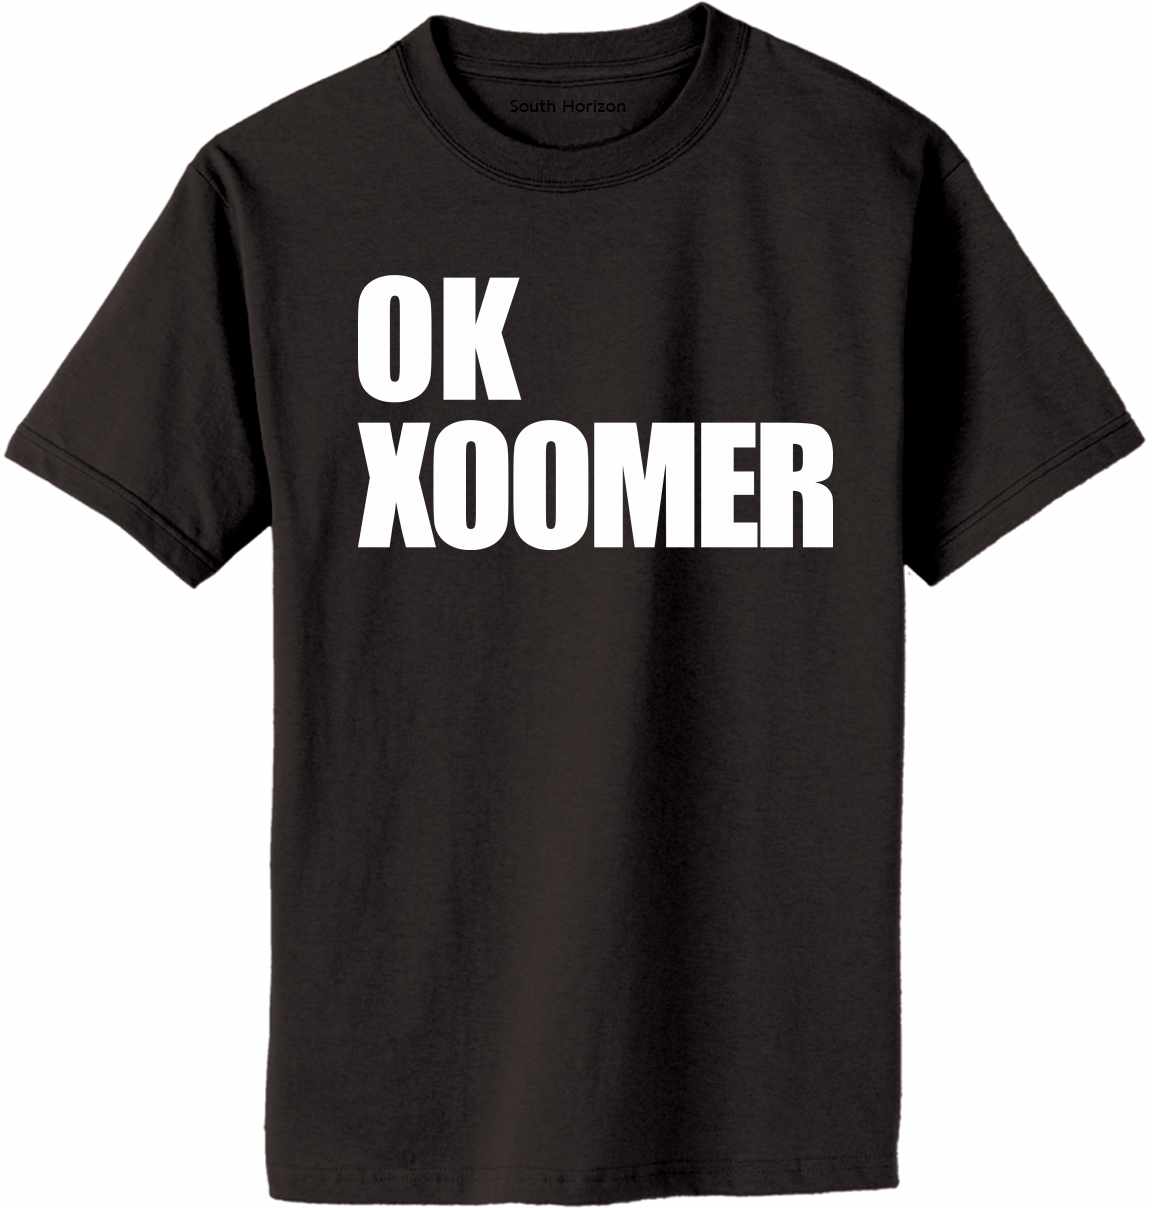 OK XOOMER Adult T-Shirt (#992-1)